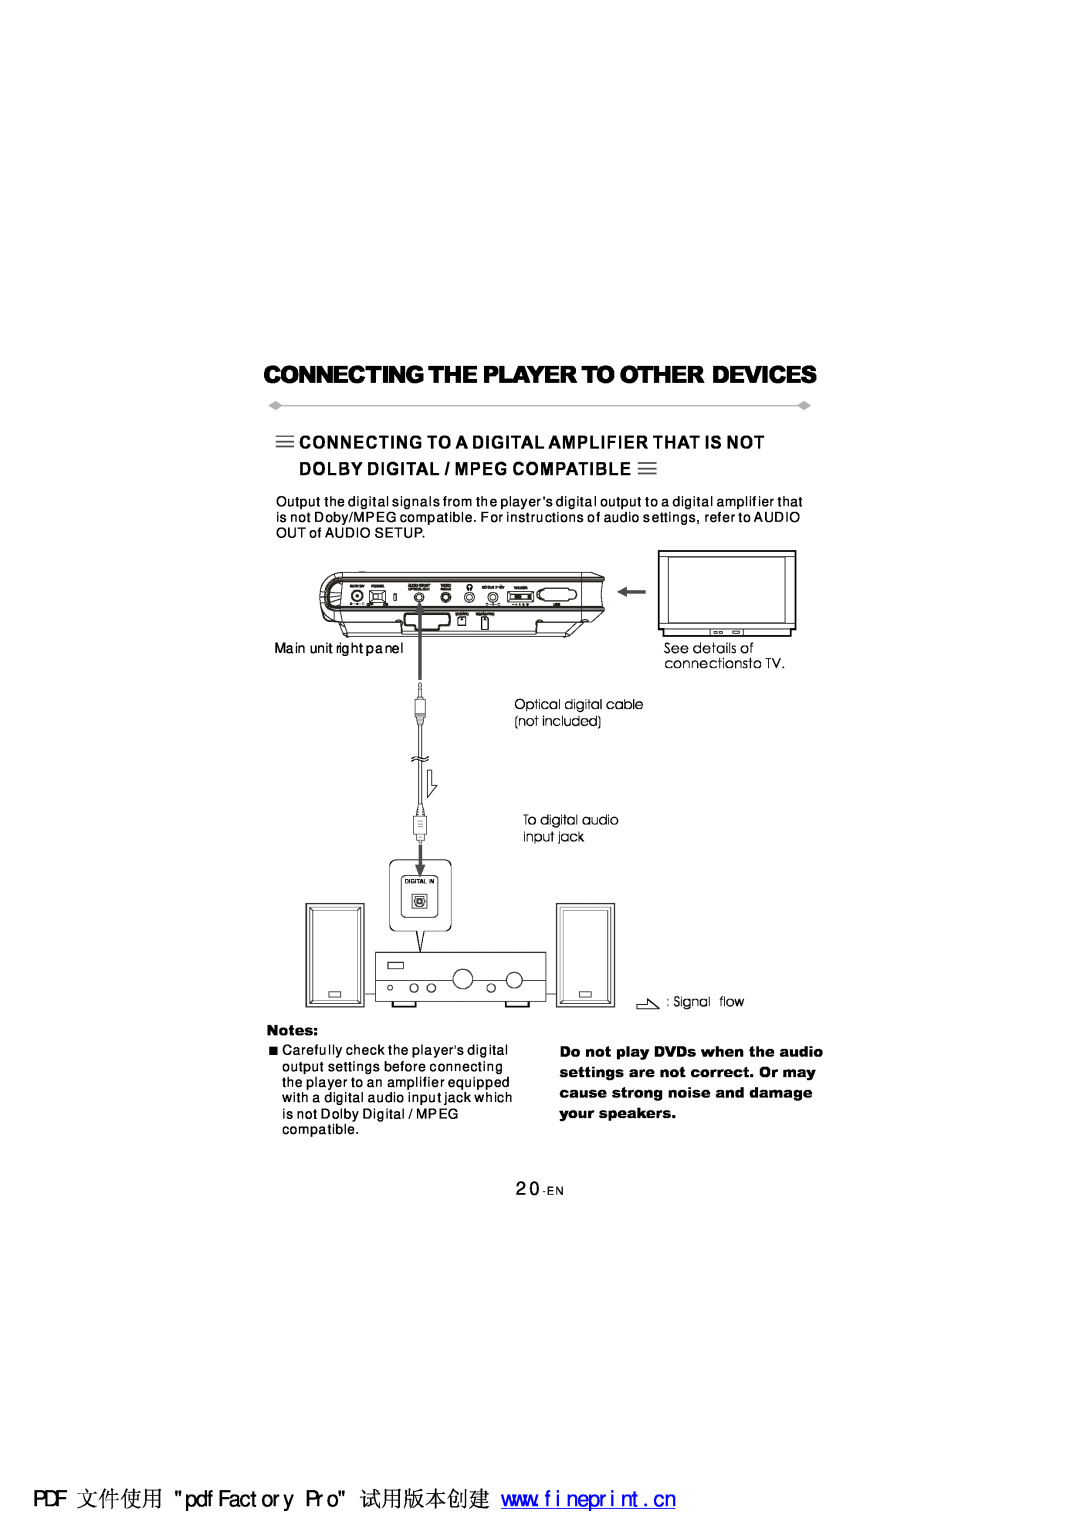 NextBase SDV97-AC manual 20-EN 